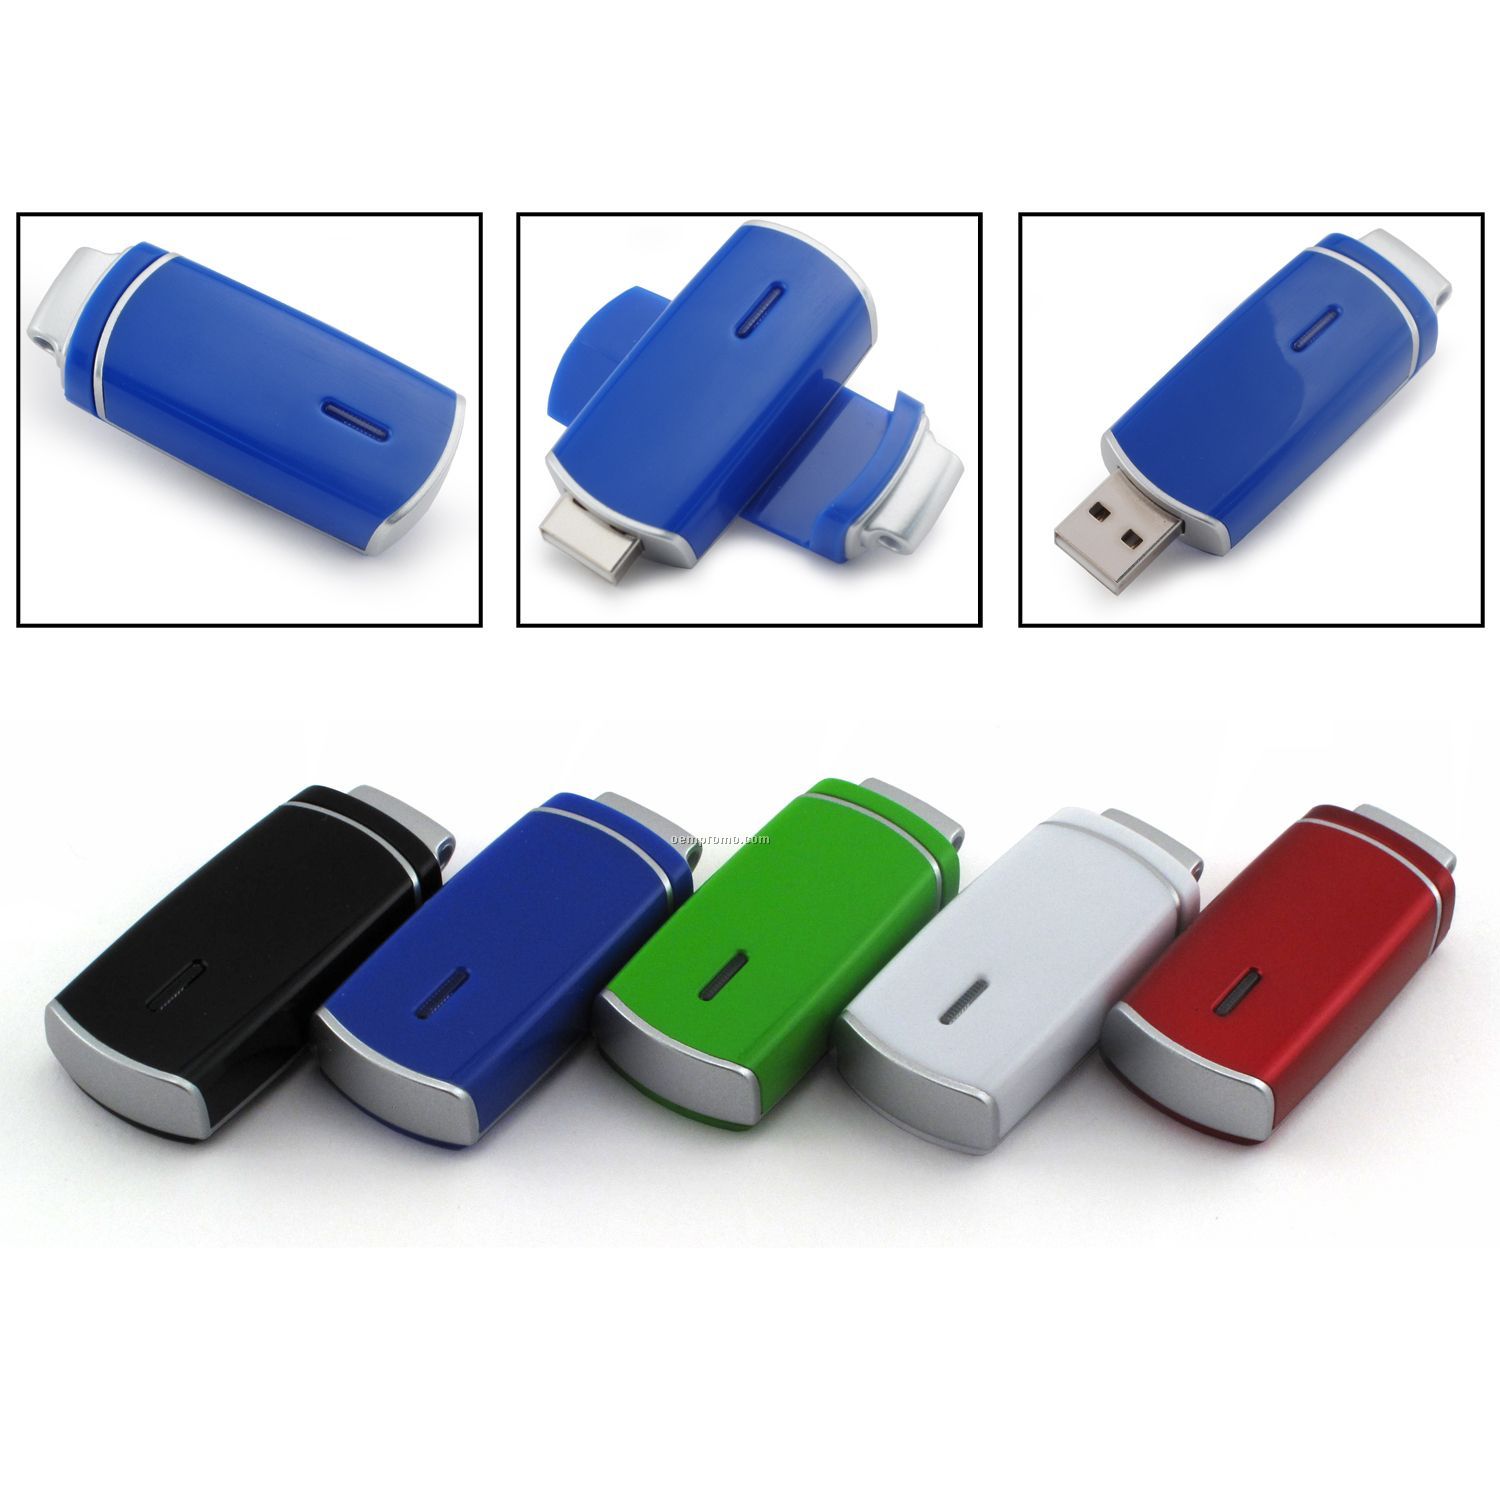 1 Gb USB Swivel 1200 Series